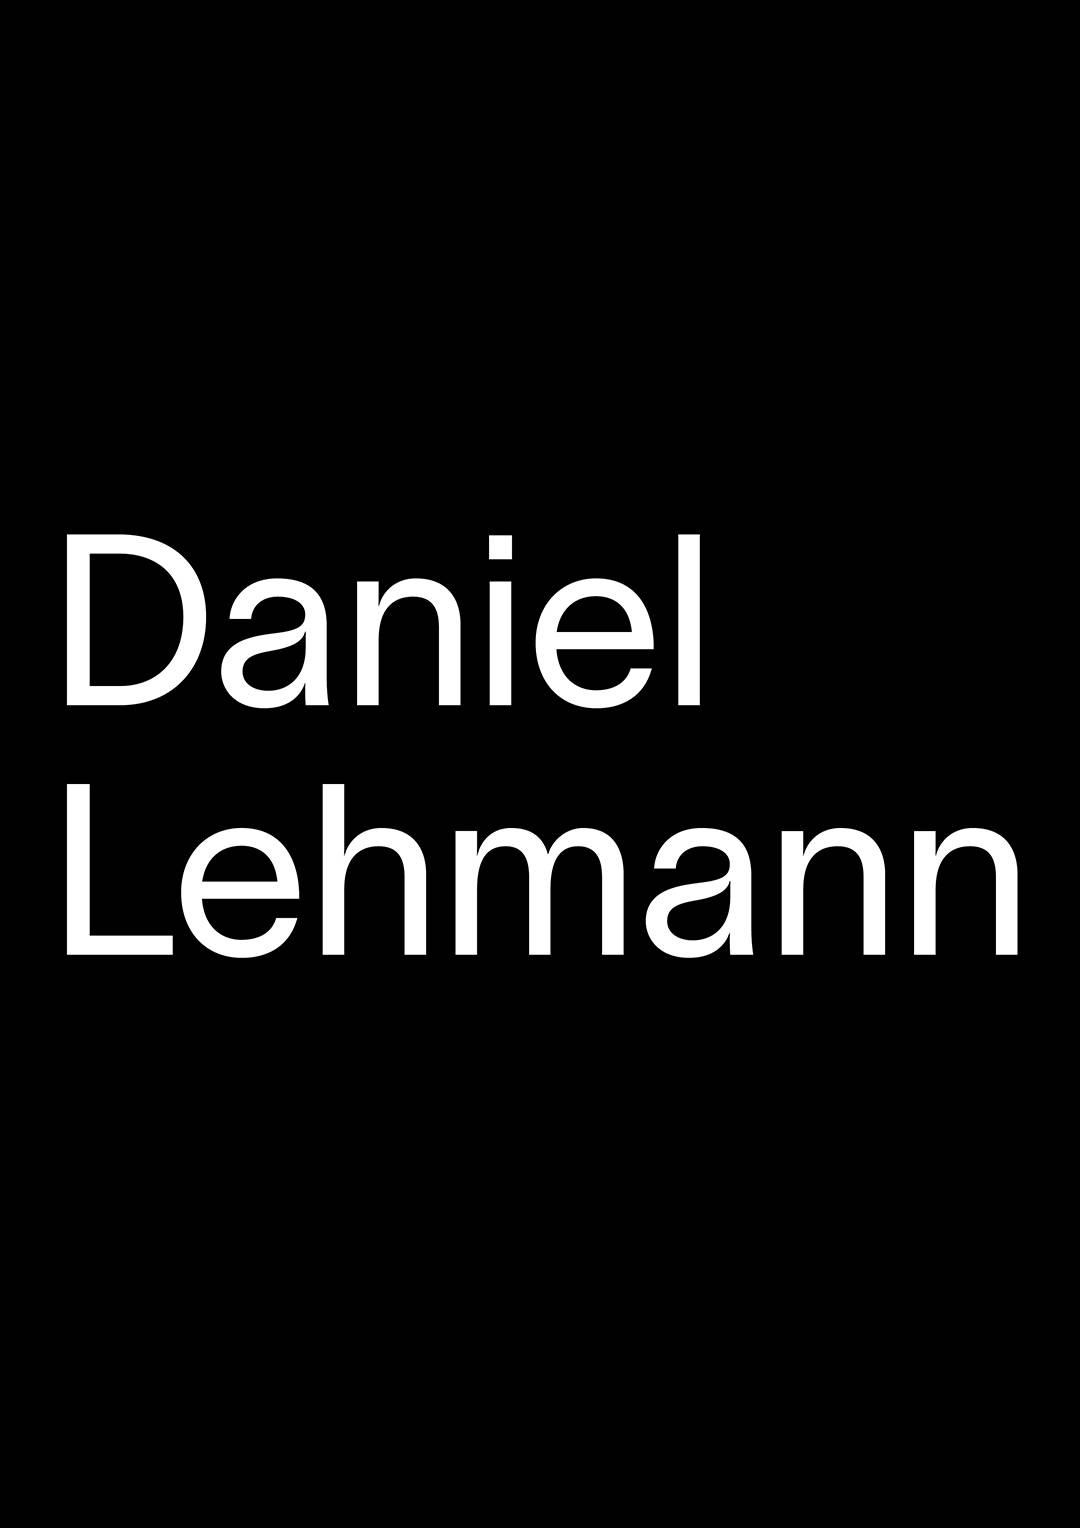 dl_daniel_lehmann3_a.jpg